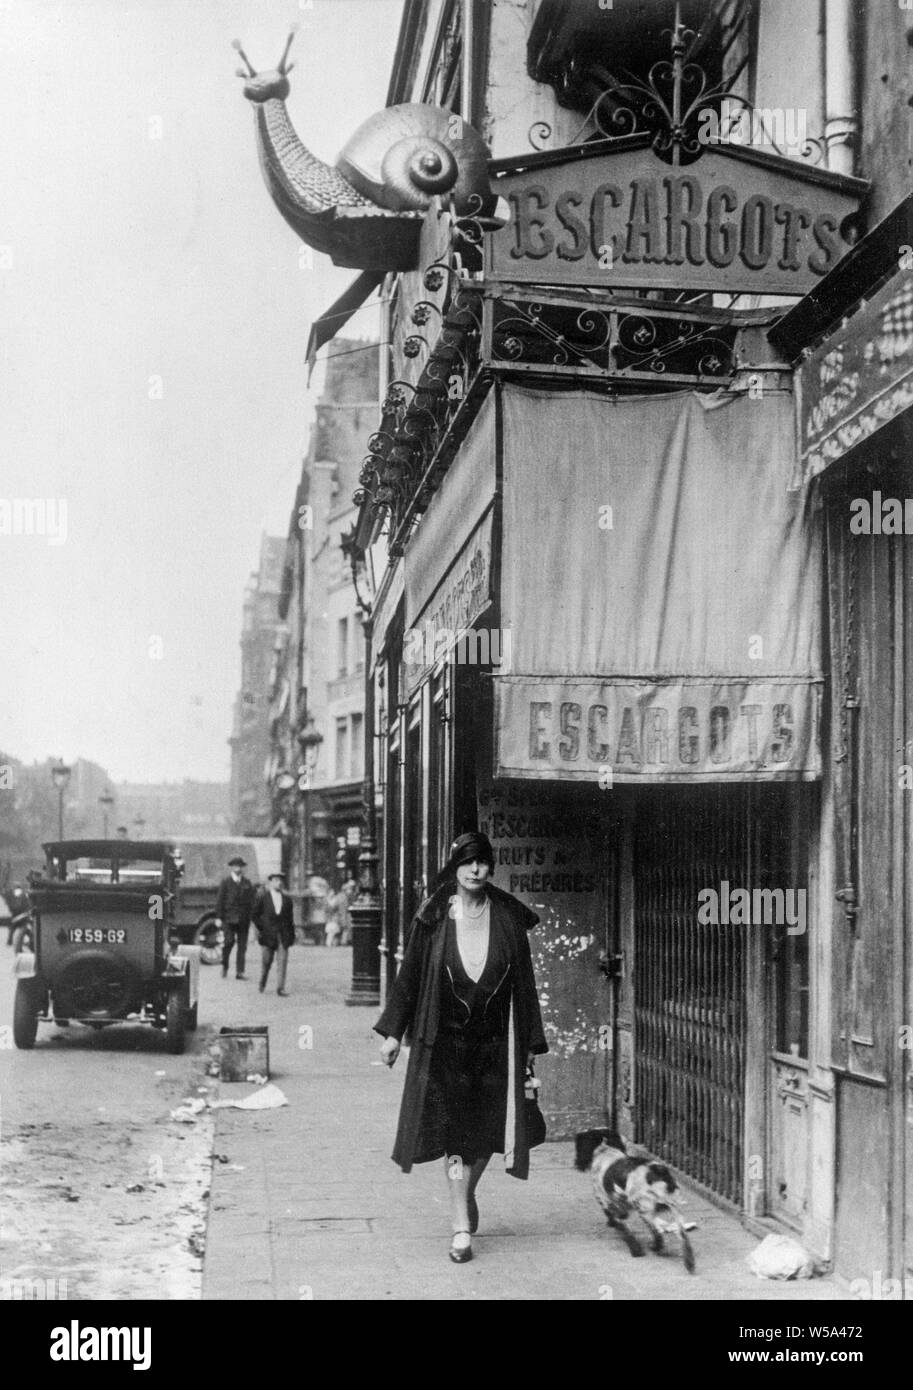 Au début du xxe siècle une photographie en noir et blanc prises à Paris, France. Photo montre une femme en passant devant un restaurant escargot, Escargots ou restaurant. Un grand modèle d'un escargot se trouve au-dessus du restaurant. Banque D'Images